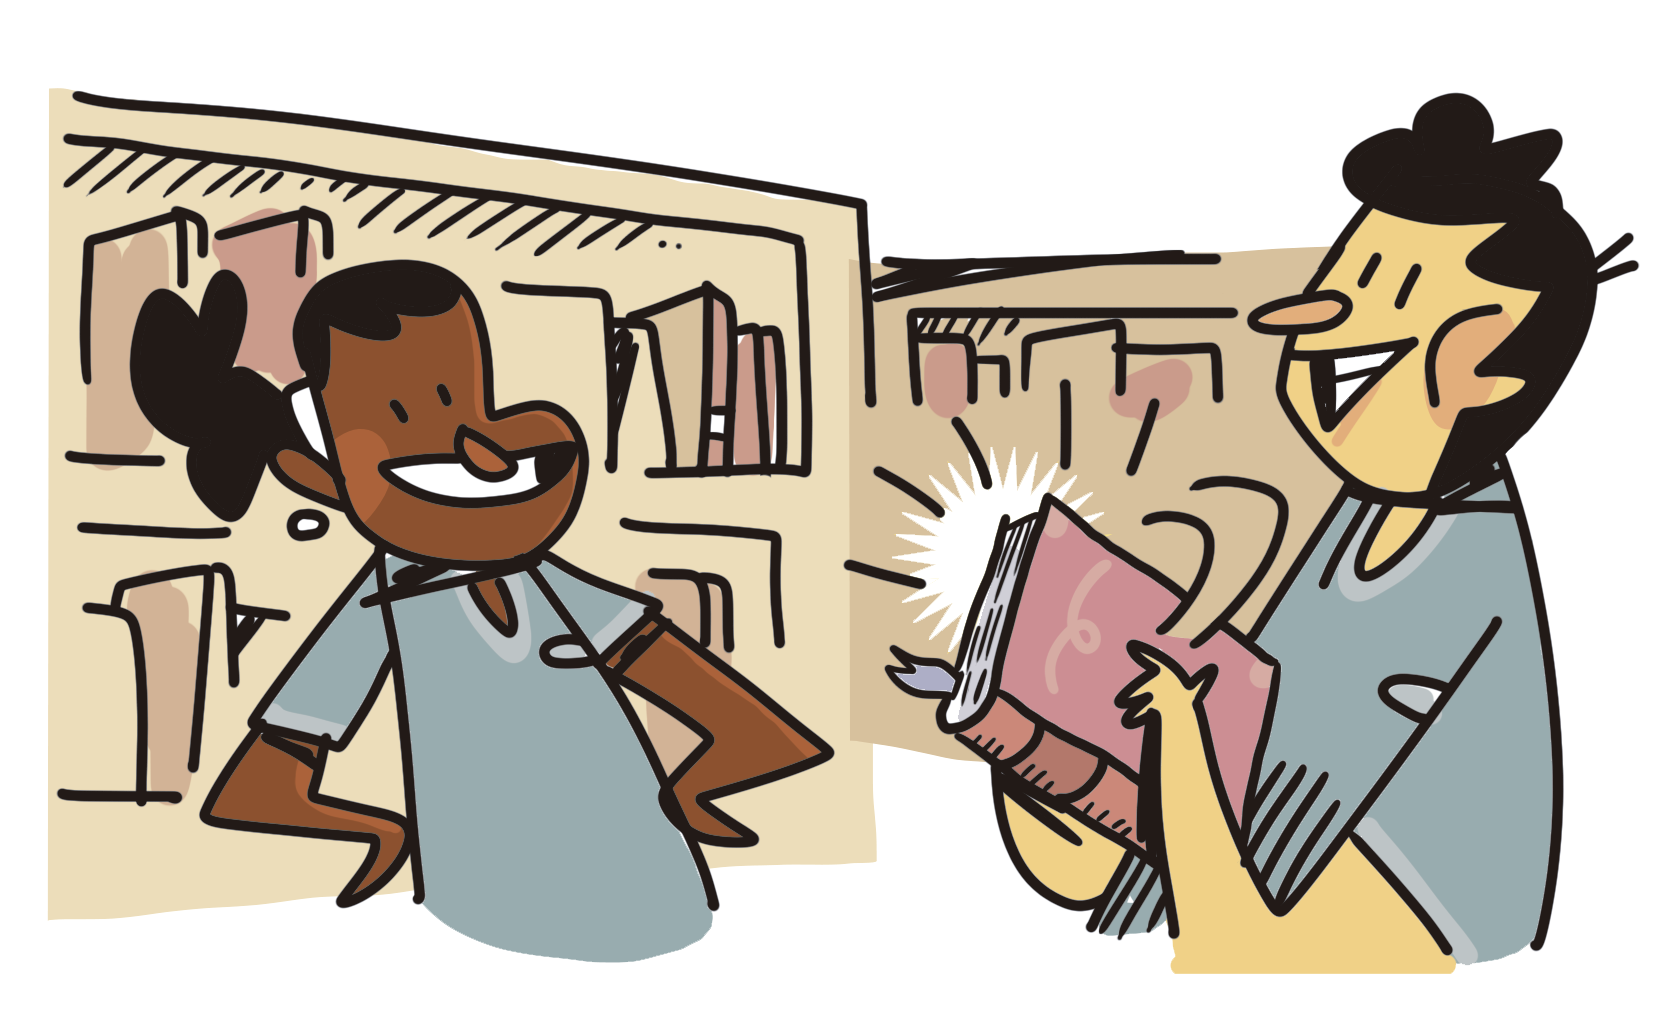 lustração. Dois jovens de uniforme em uma biblioteca. A menina está sorridente com as mãos na cintura. O menino está fechando um livro.